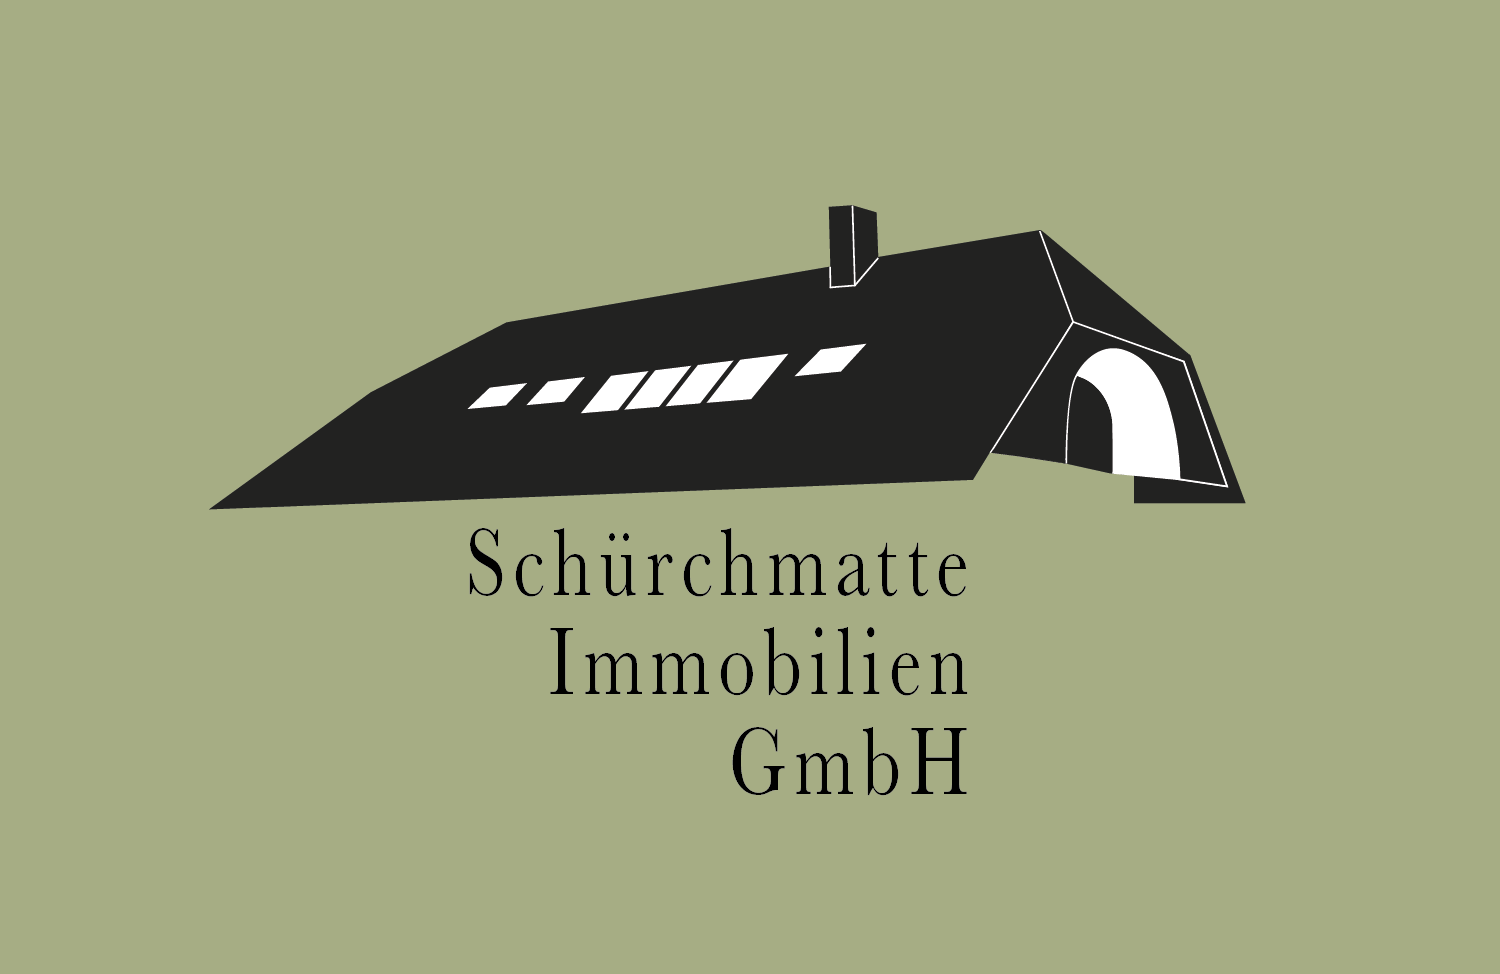 Schürchmatte Immobilien GmbH